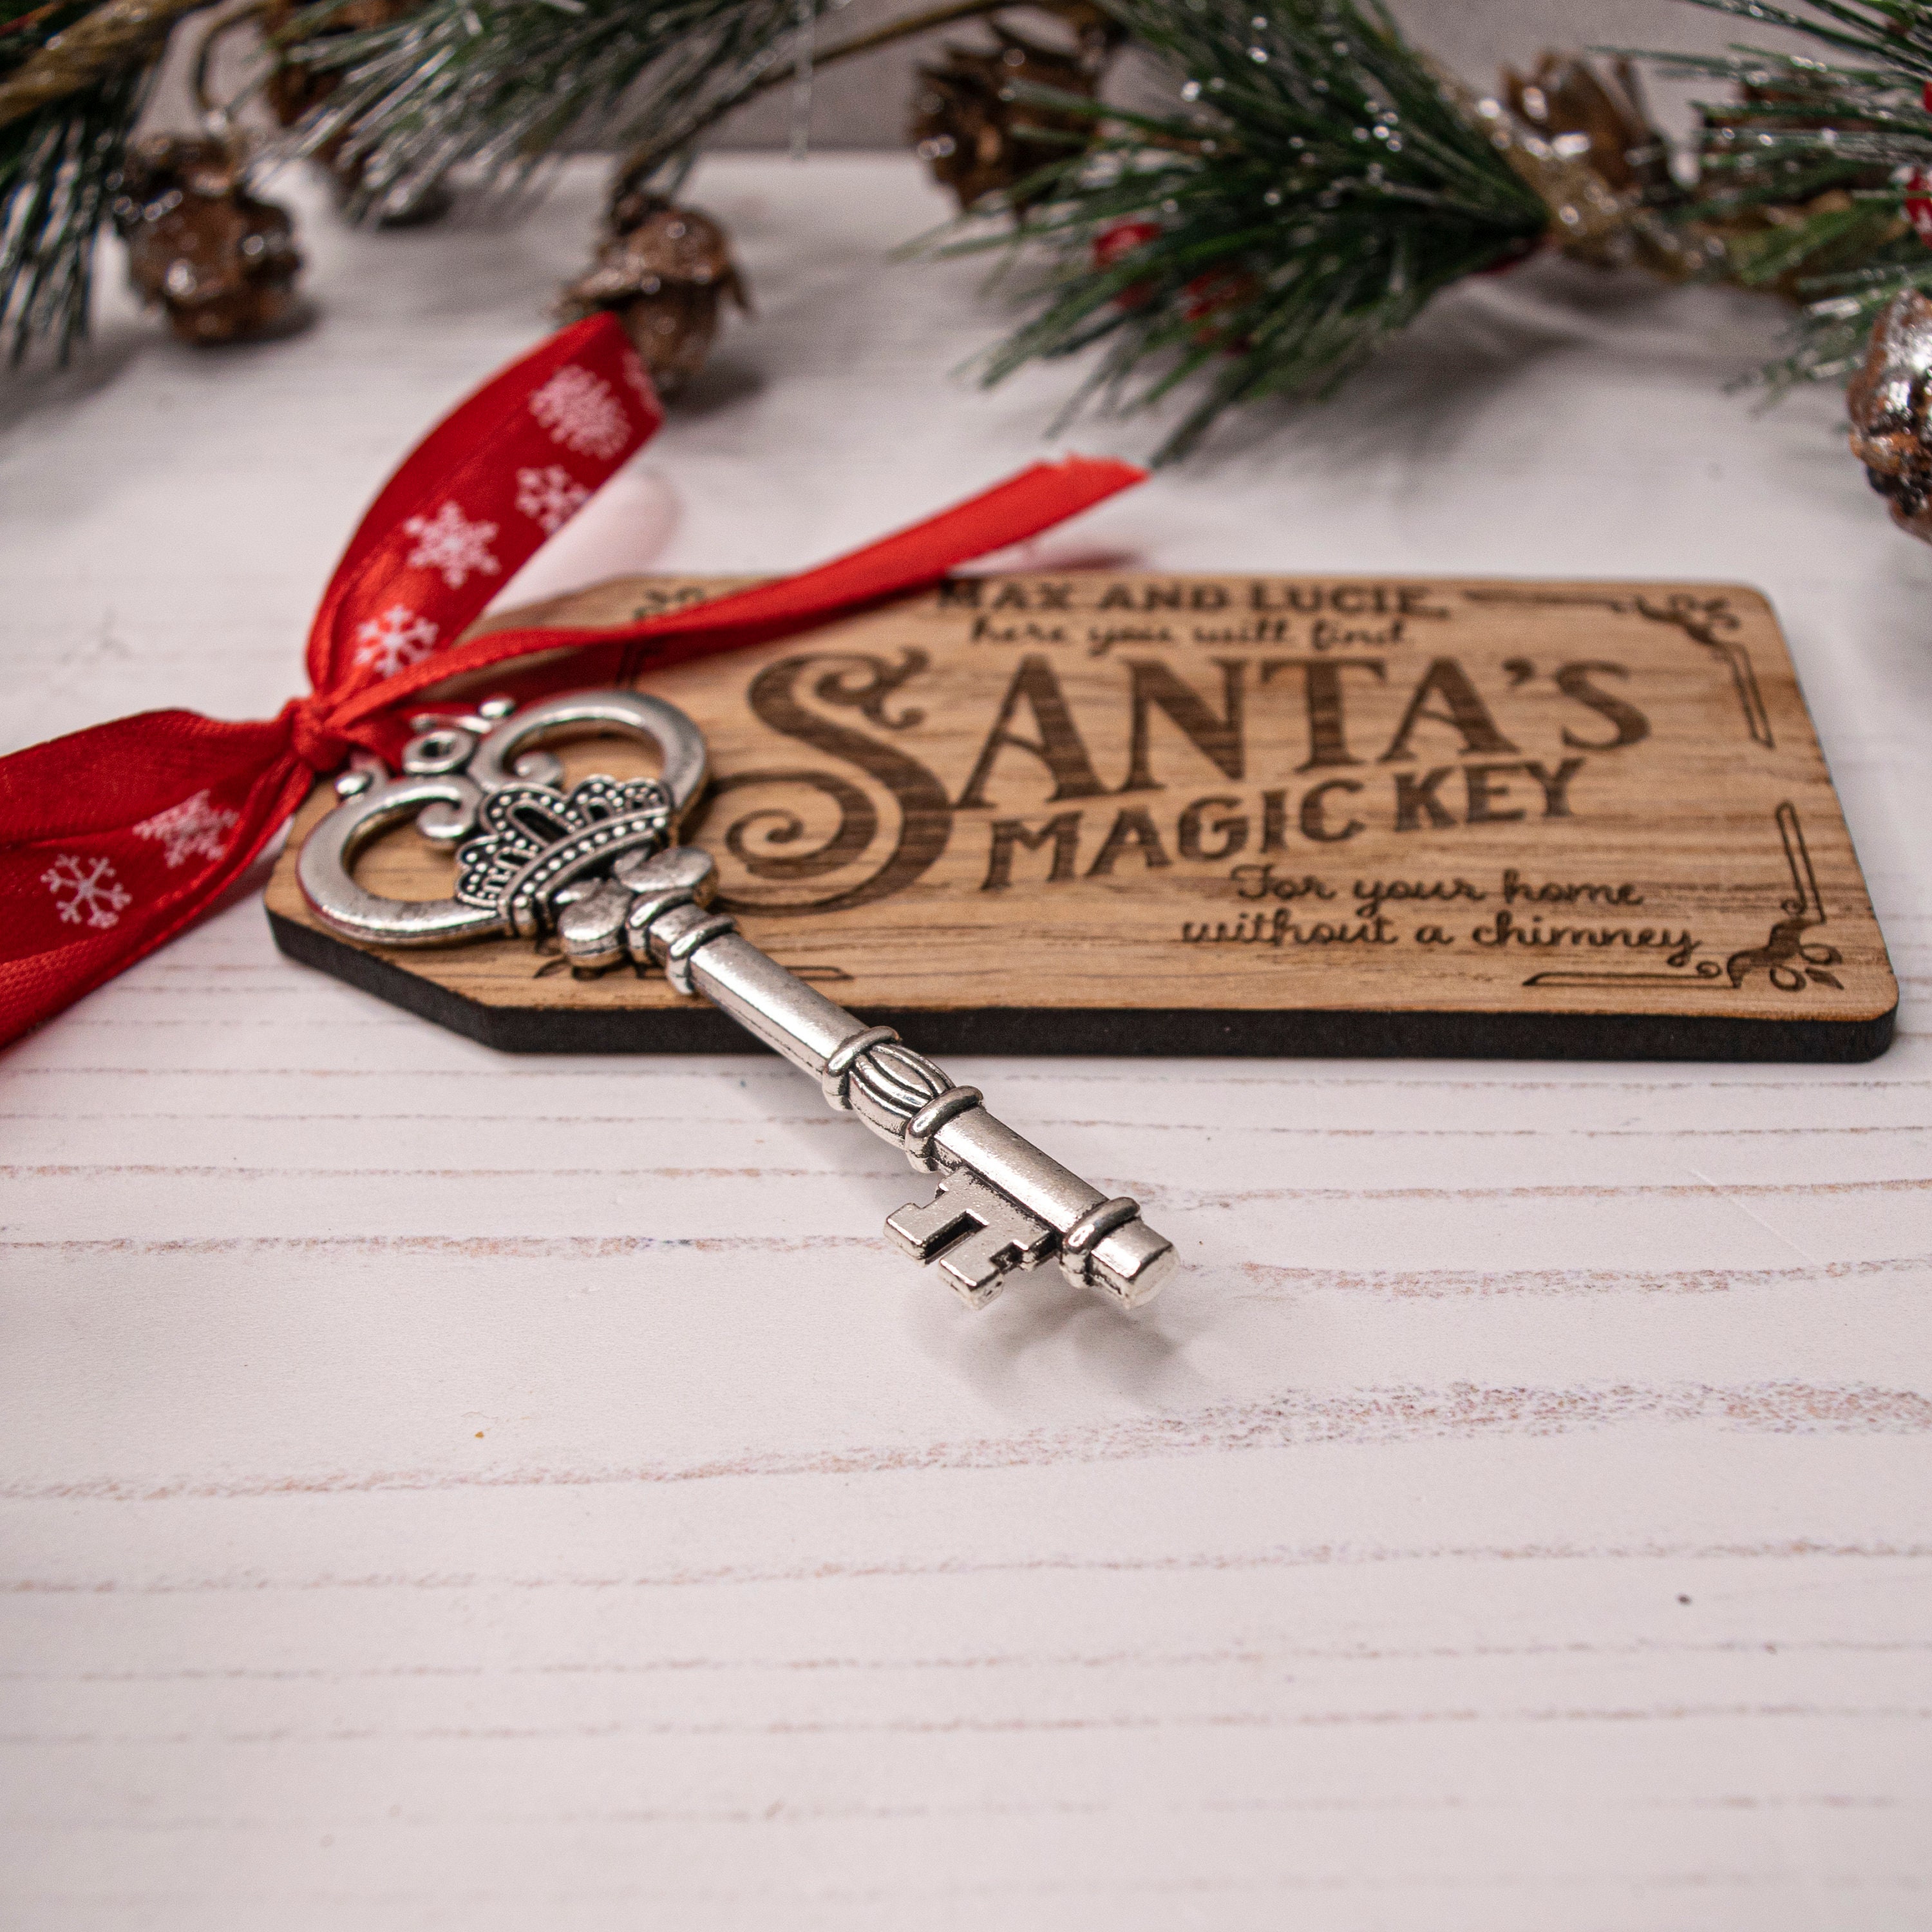 Santa's Magic Key Tag, Silver Santa Magic Key With Wooden Tag, Engraved  Wood Santa Clause Tag, Christmas Eve Box Gift for Children 